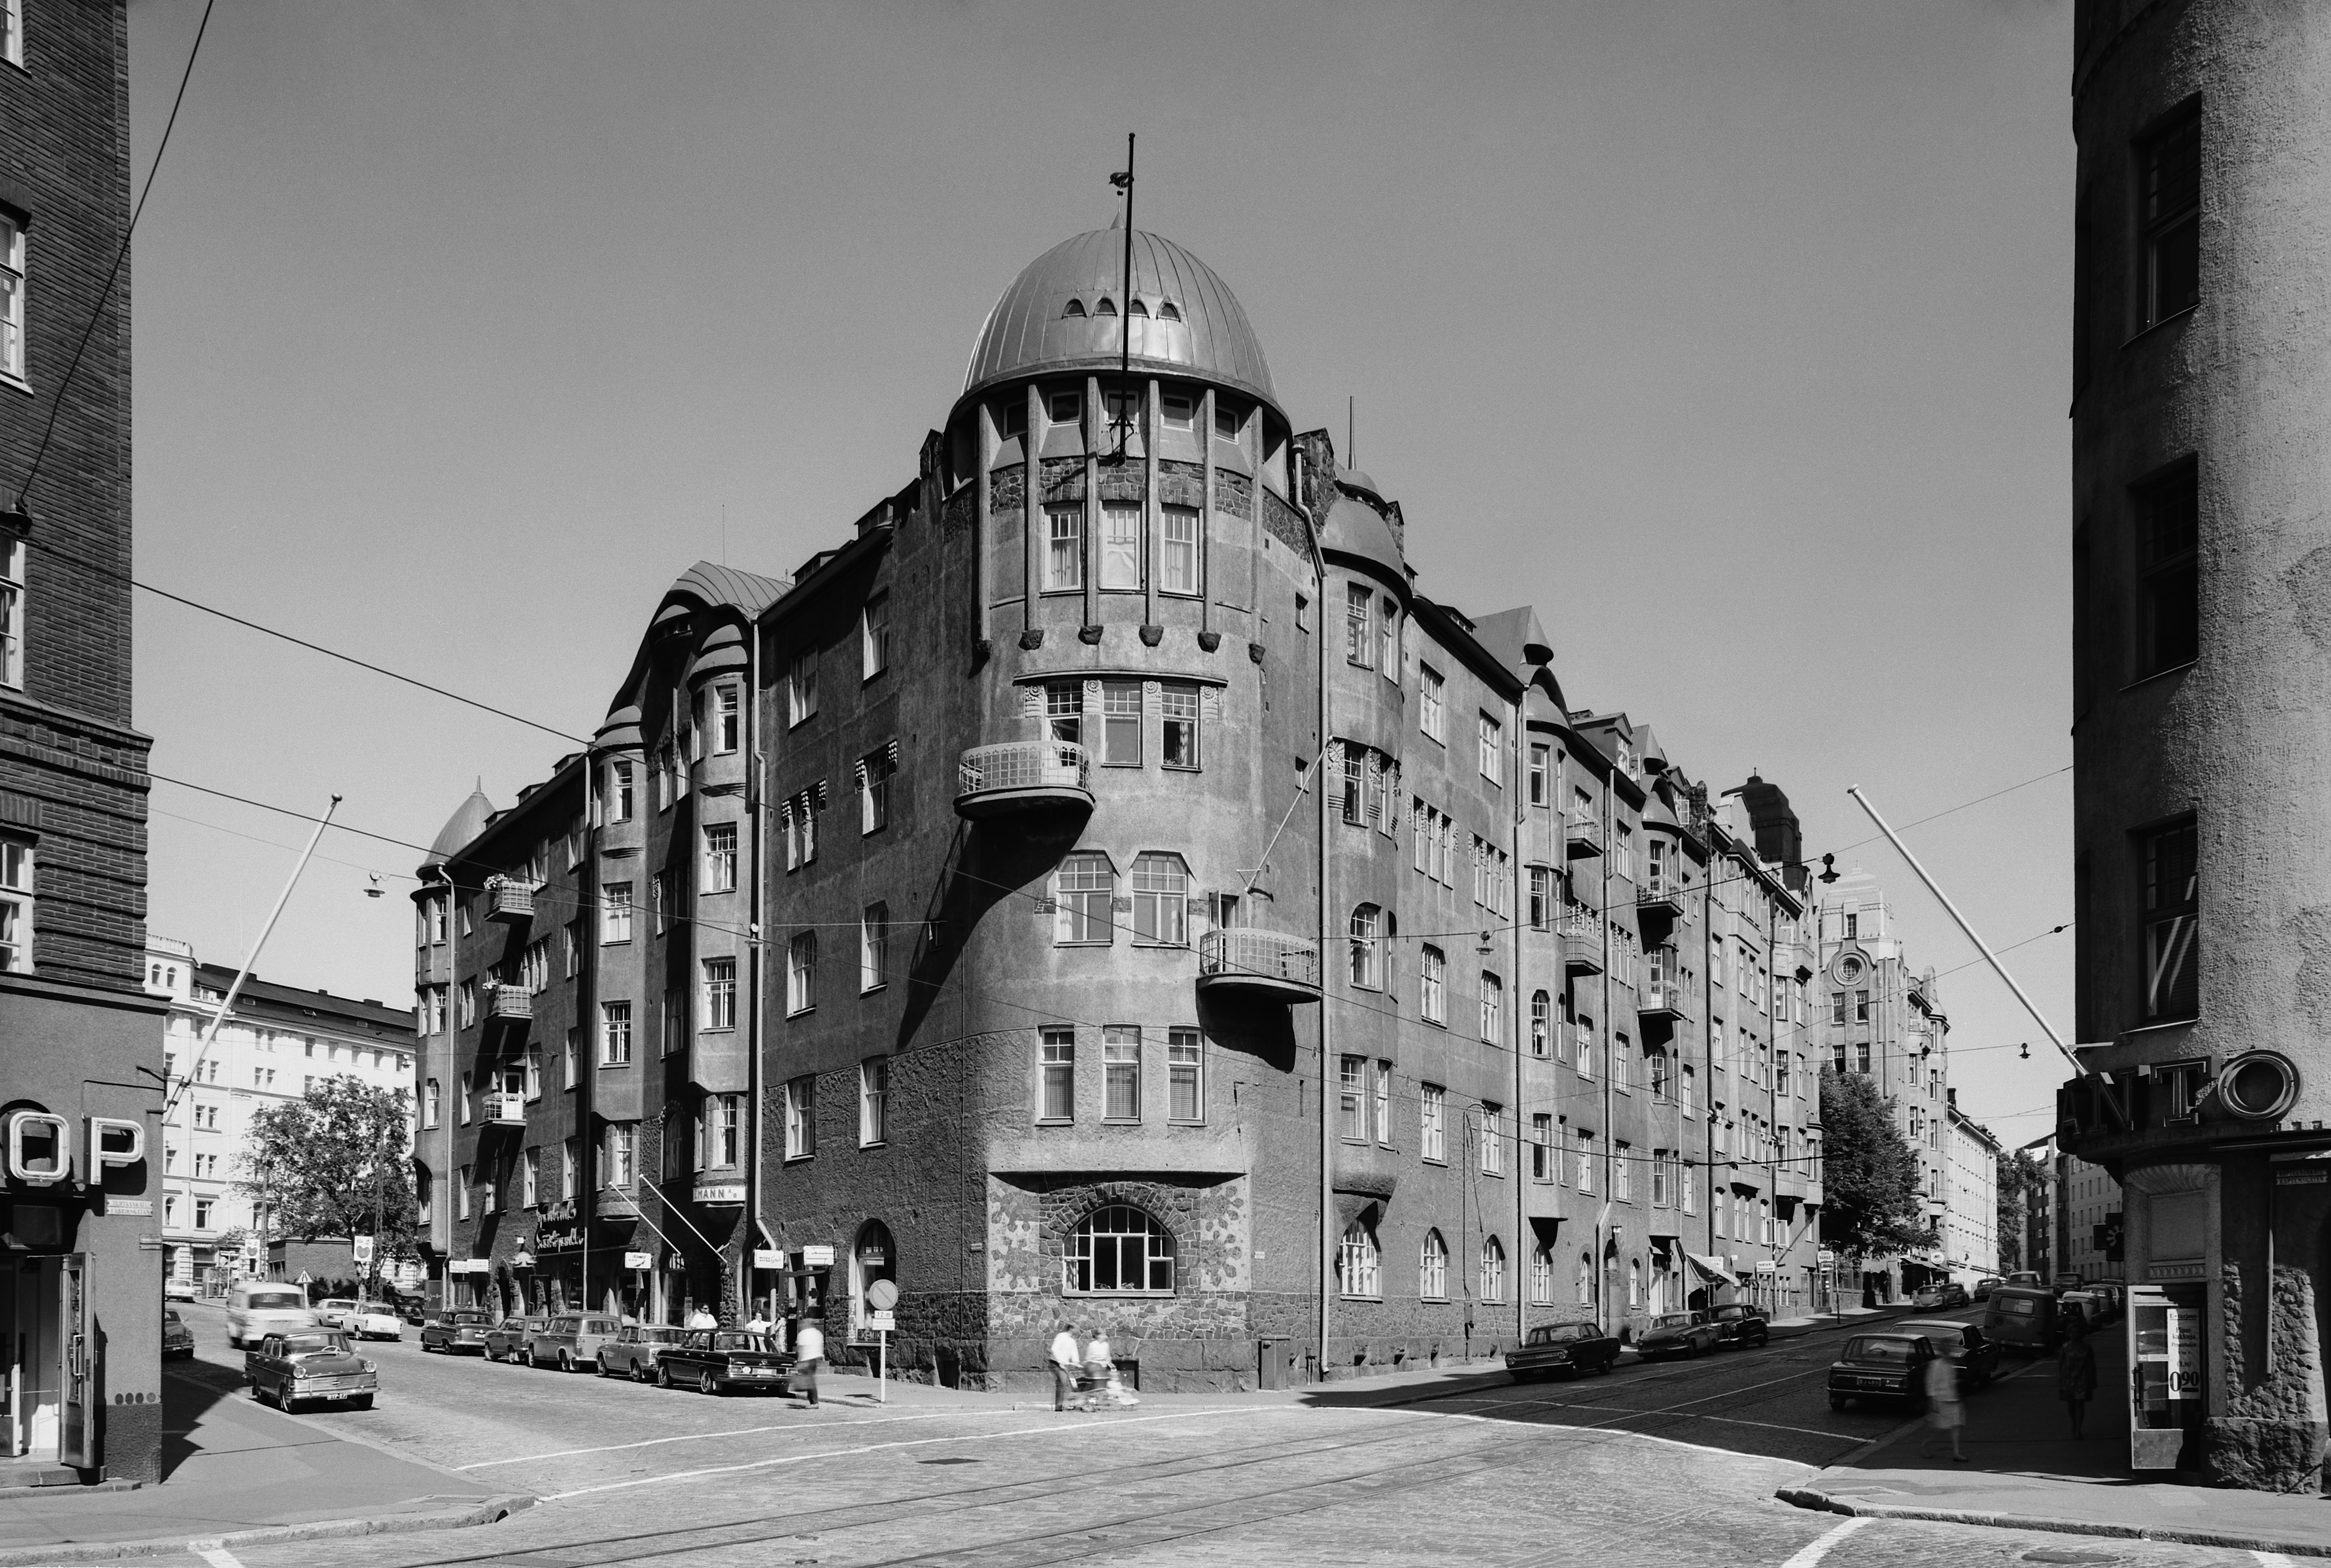 Tehtaankatu 9 - Kapteeninkatu 11. Ullanlinnassa sijaitsevan talon on suunnitellut Usko Nyström. Kansallisromantiikkaa edustava talo on rakennettu vuonna 1902 Naakka-kortteliin.